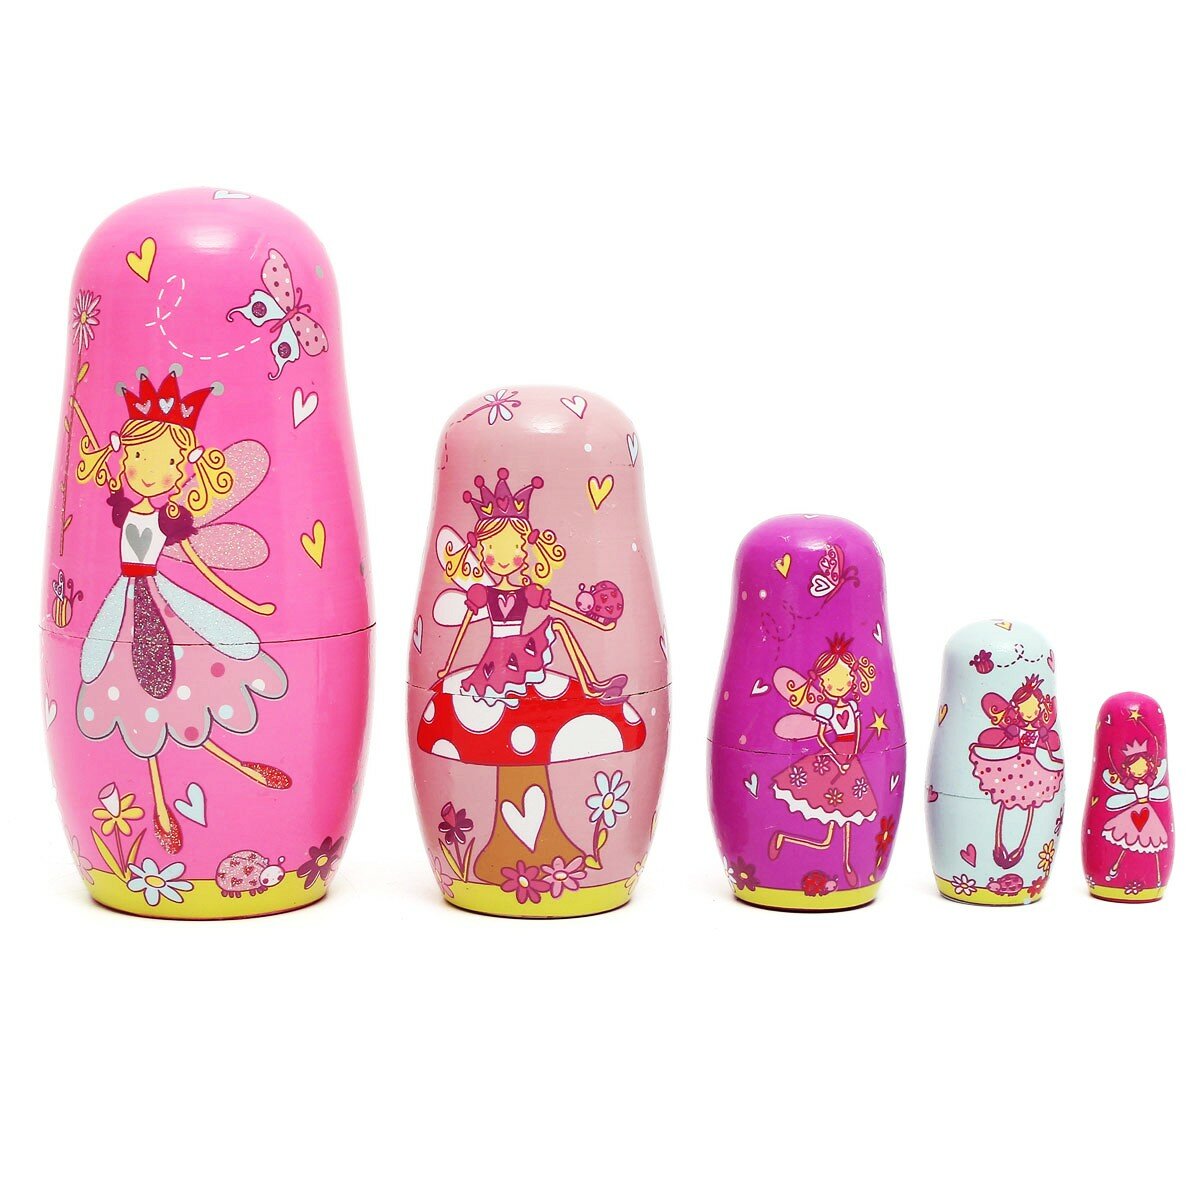 

5pcs Wooden Angel Fairy Russian Babushka Matryoshka Nesting Dolls Tricky Toys Creative Gift